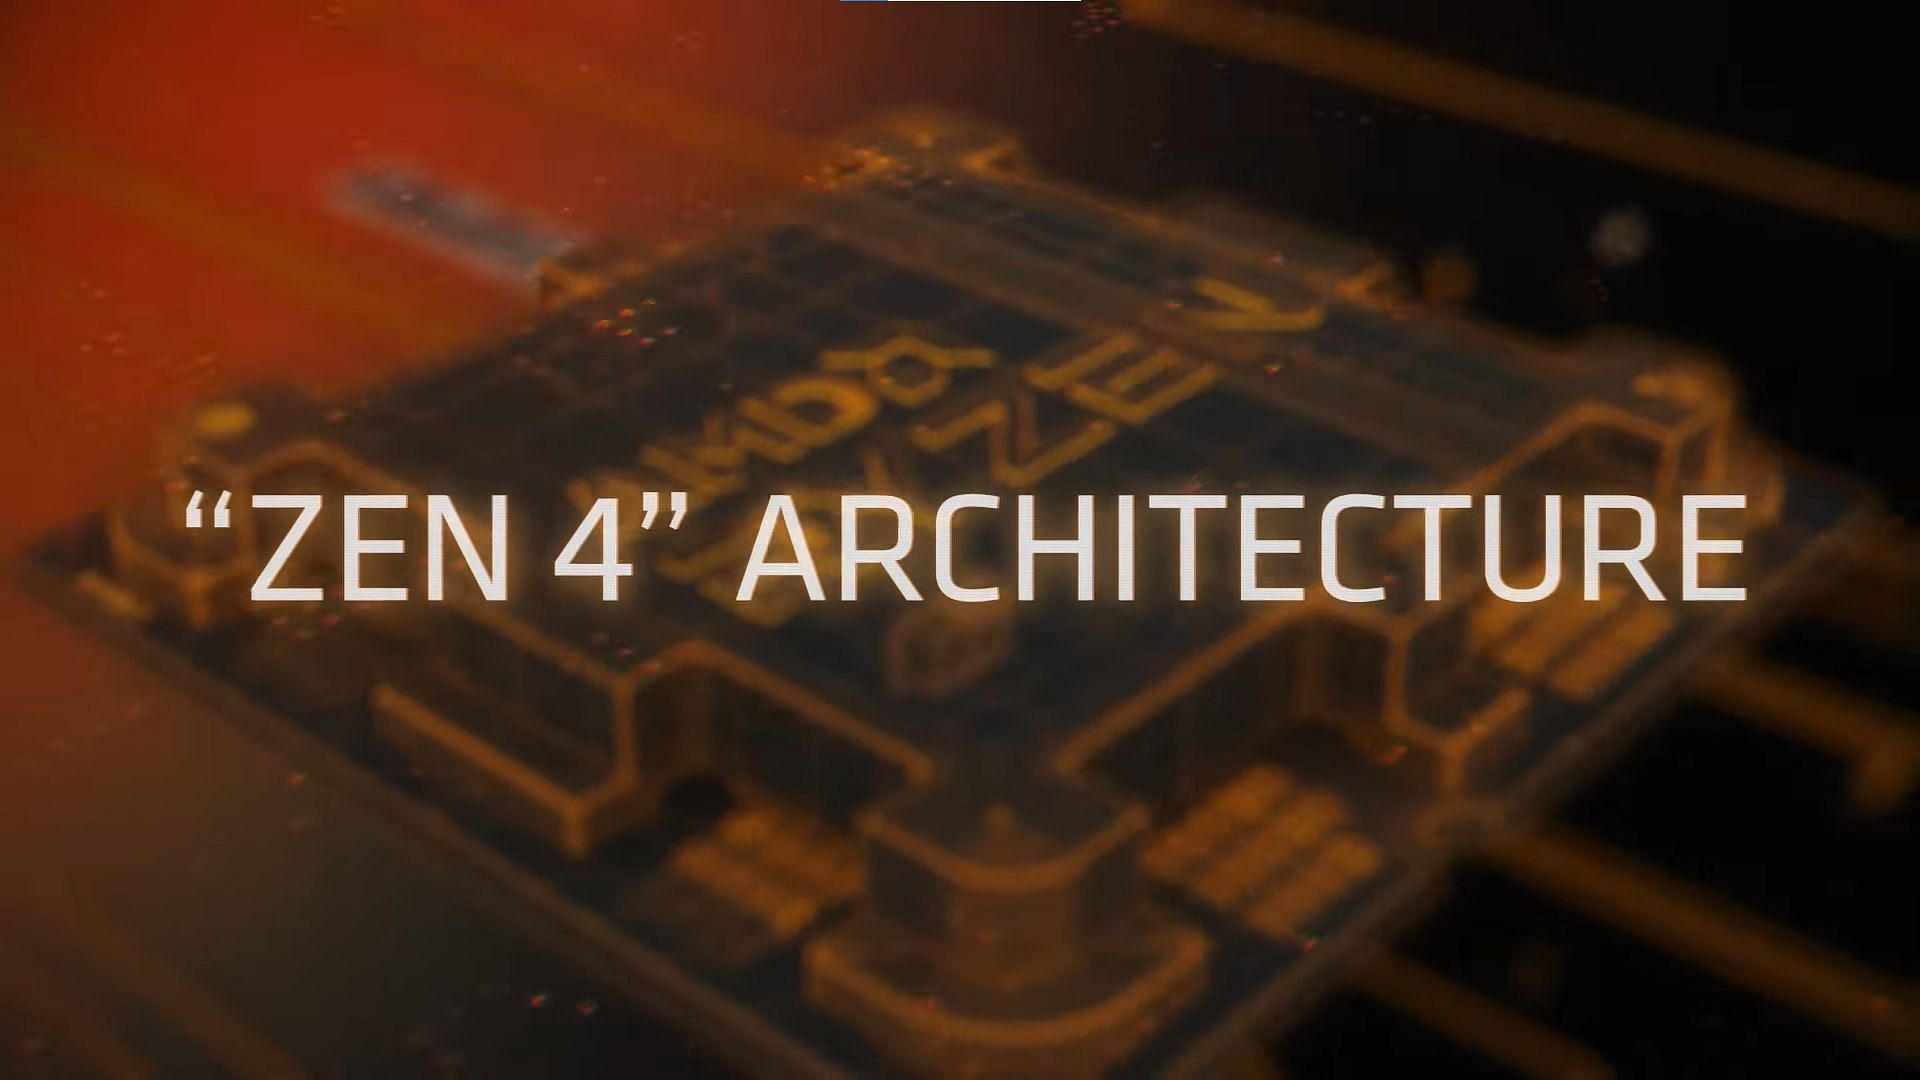 The Zen 4 architecture (Image via AMD)